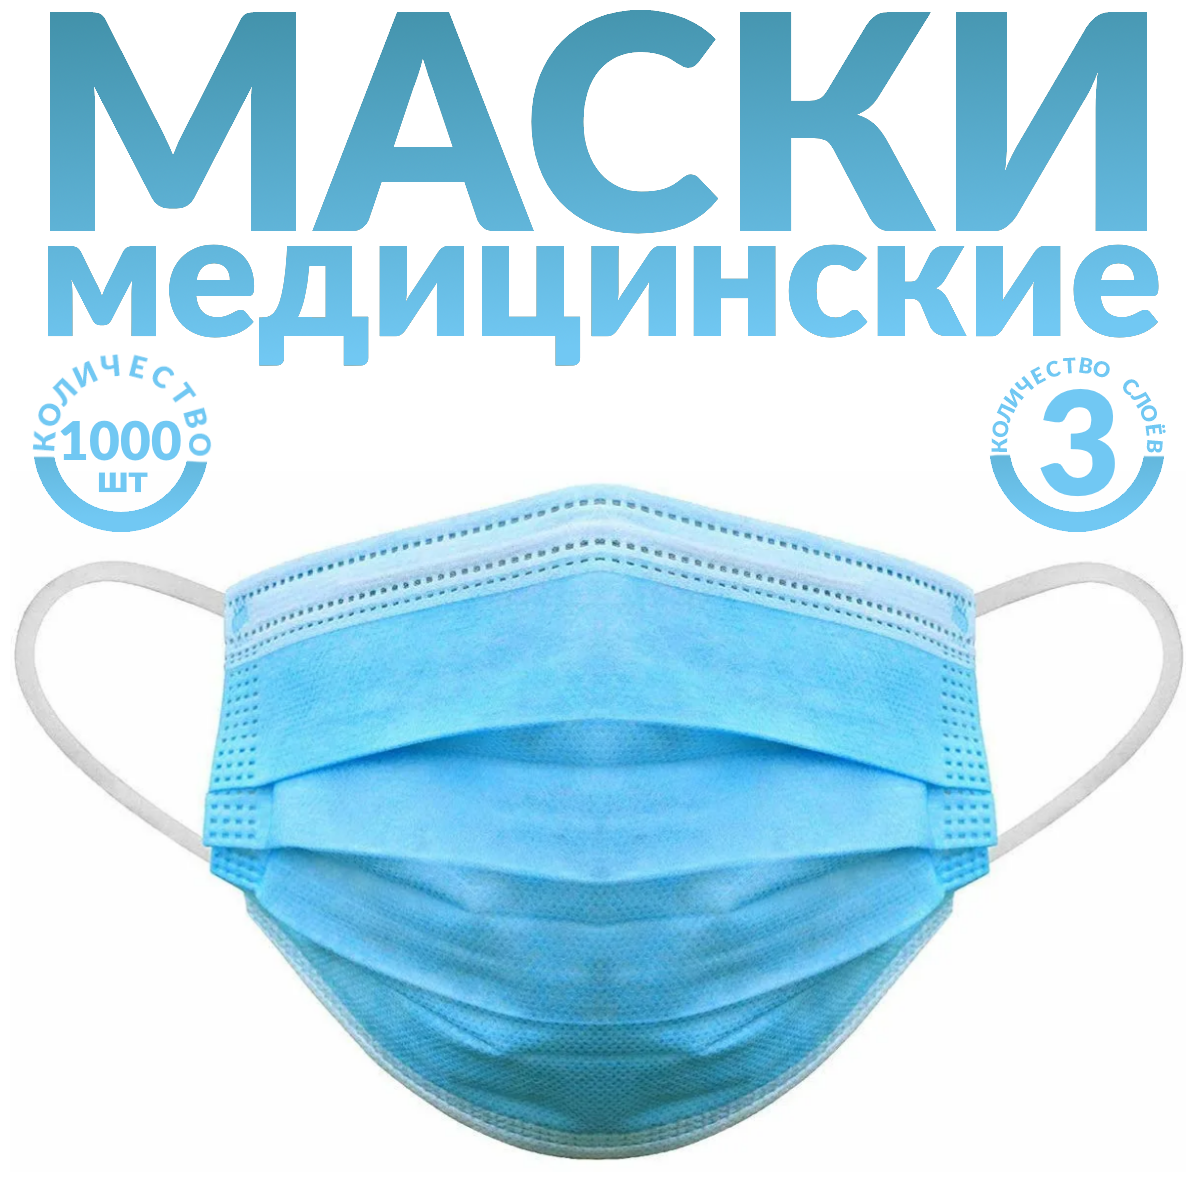 Одноразовые маски трёхслойные, 1000 шт., голубые (гигиенические маски медицинские из нетканного материала)